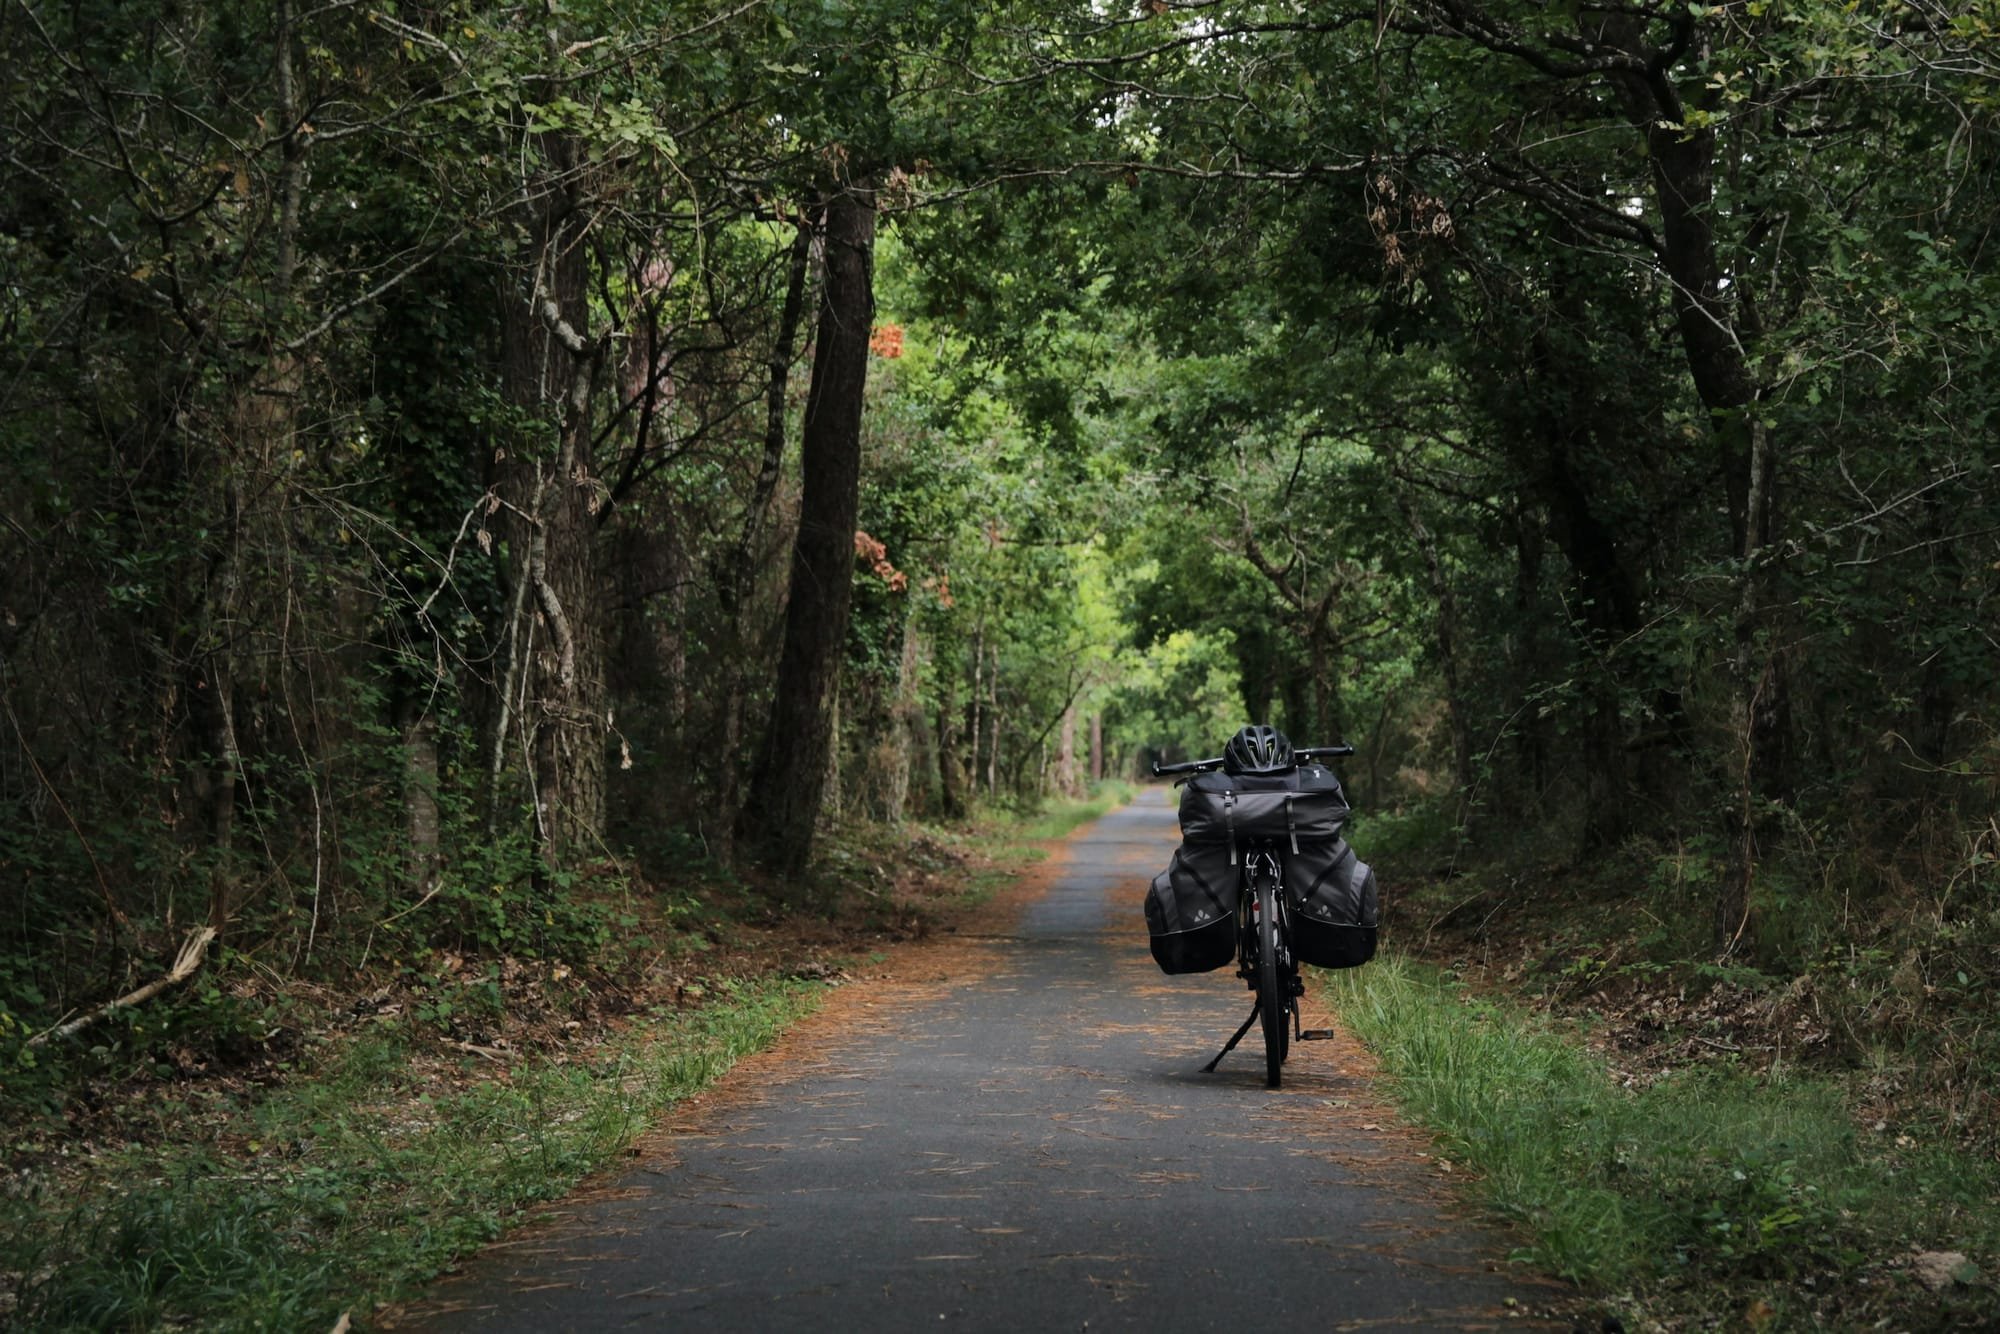 La popularidad del bikepacking y el creciente interés en el turismo sostenible y de aventura